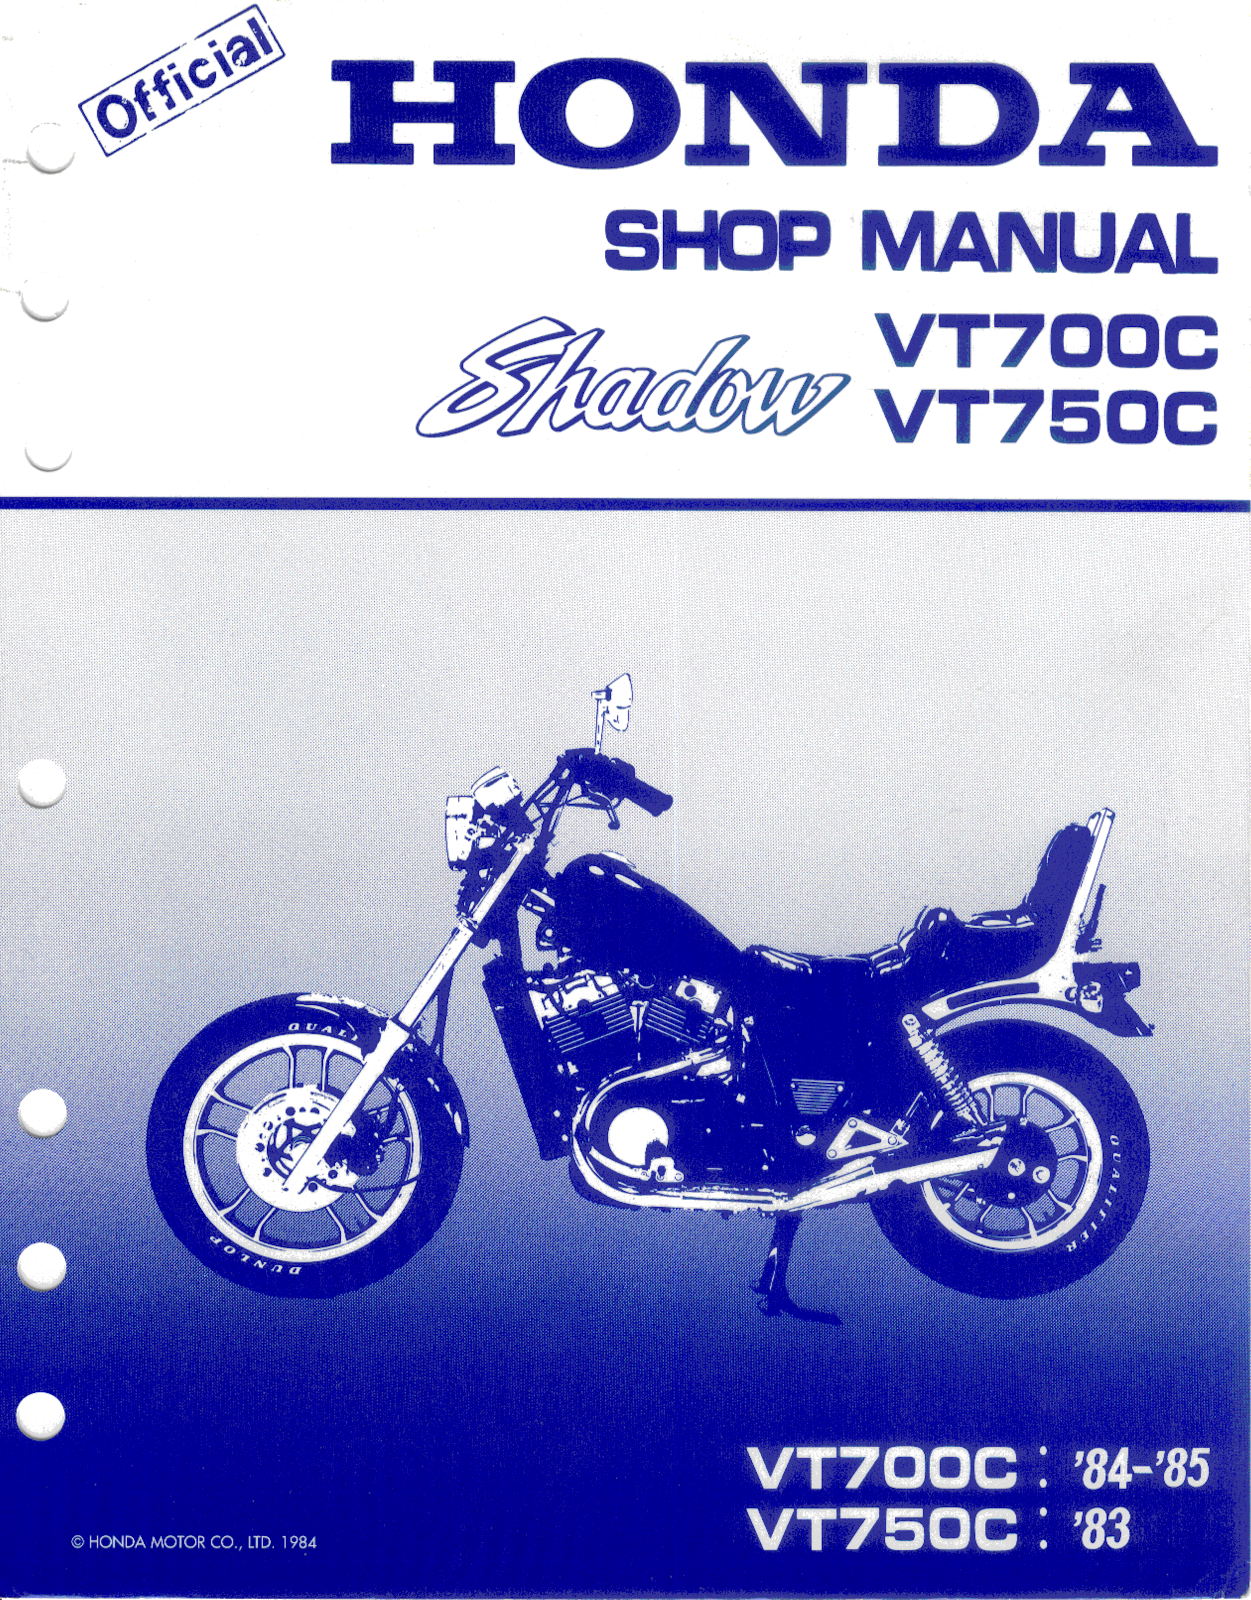 Honda VT 700, VT 750 Service Manual 01